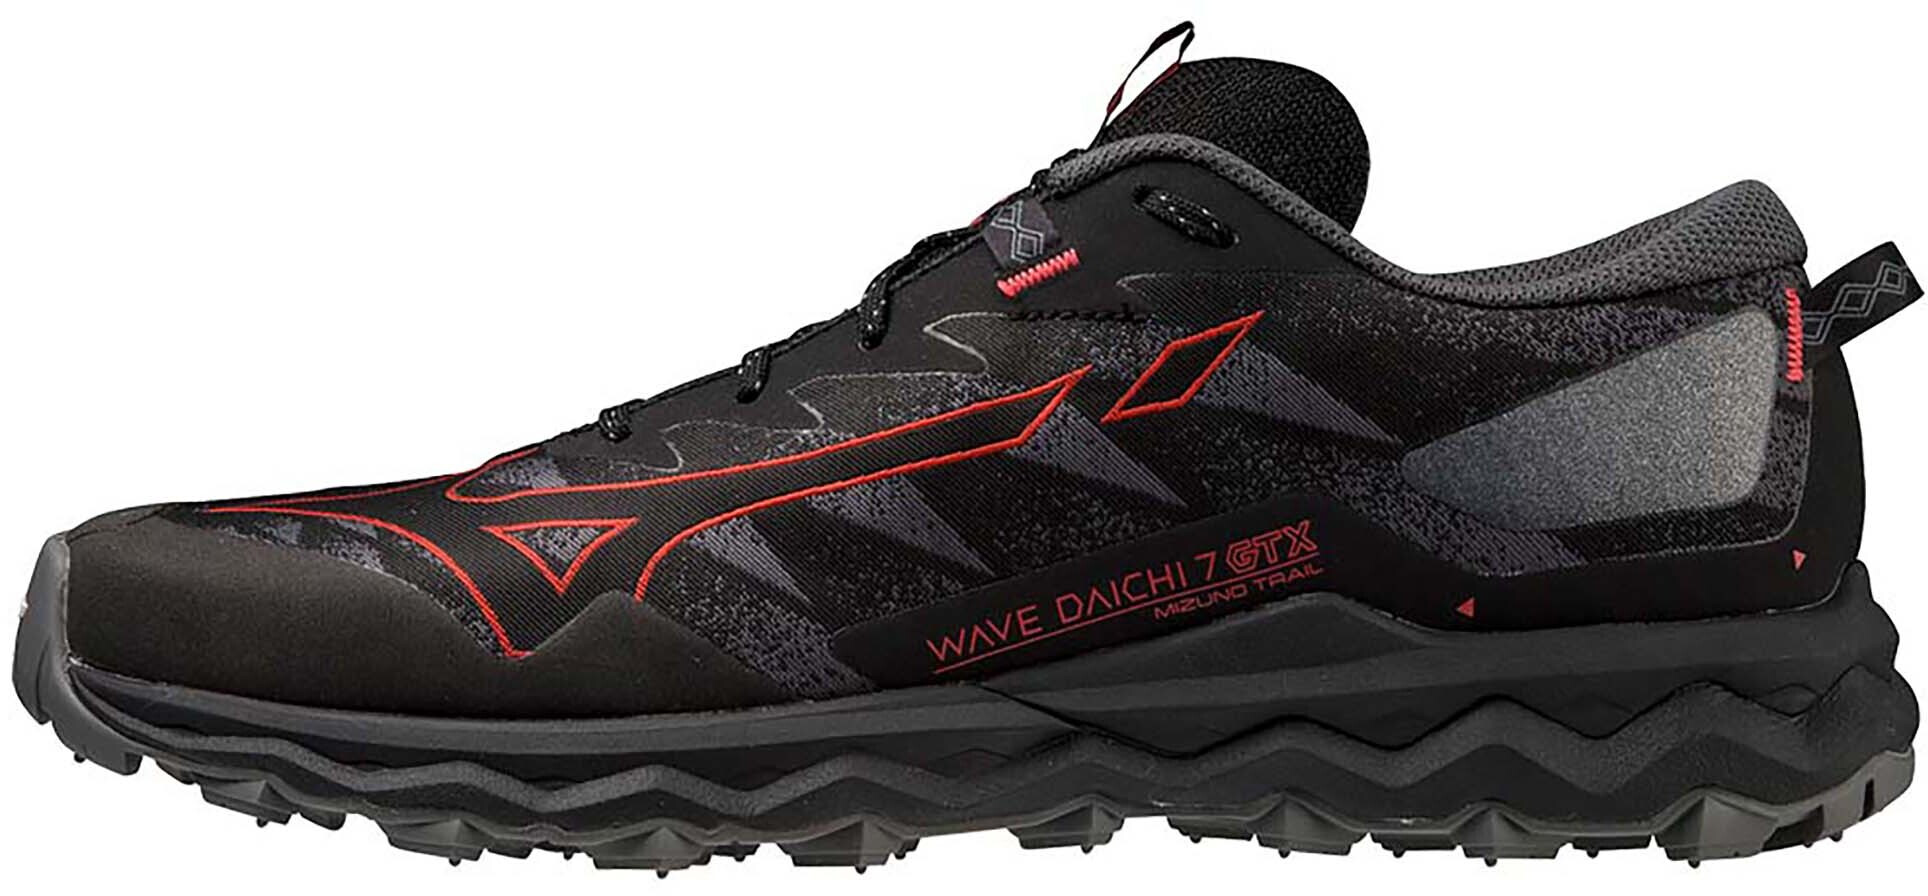 Mizuno Wave Daichi 7 GTX Schuhe Herren schwarz